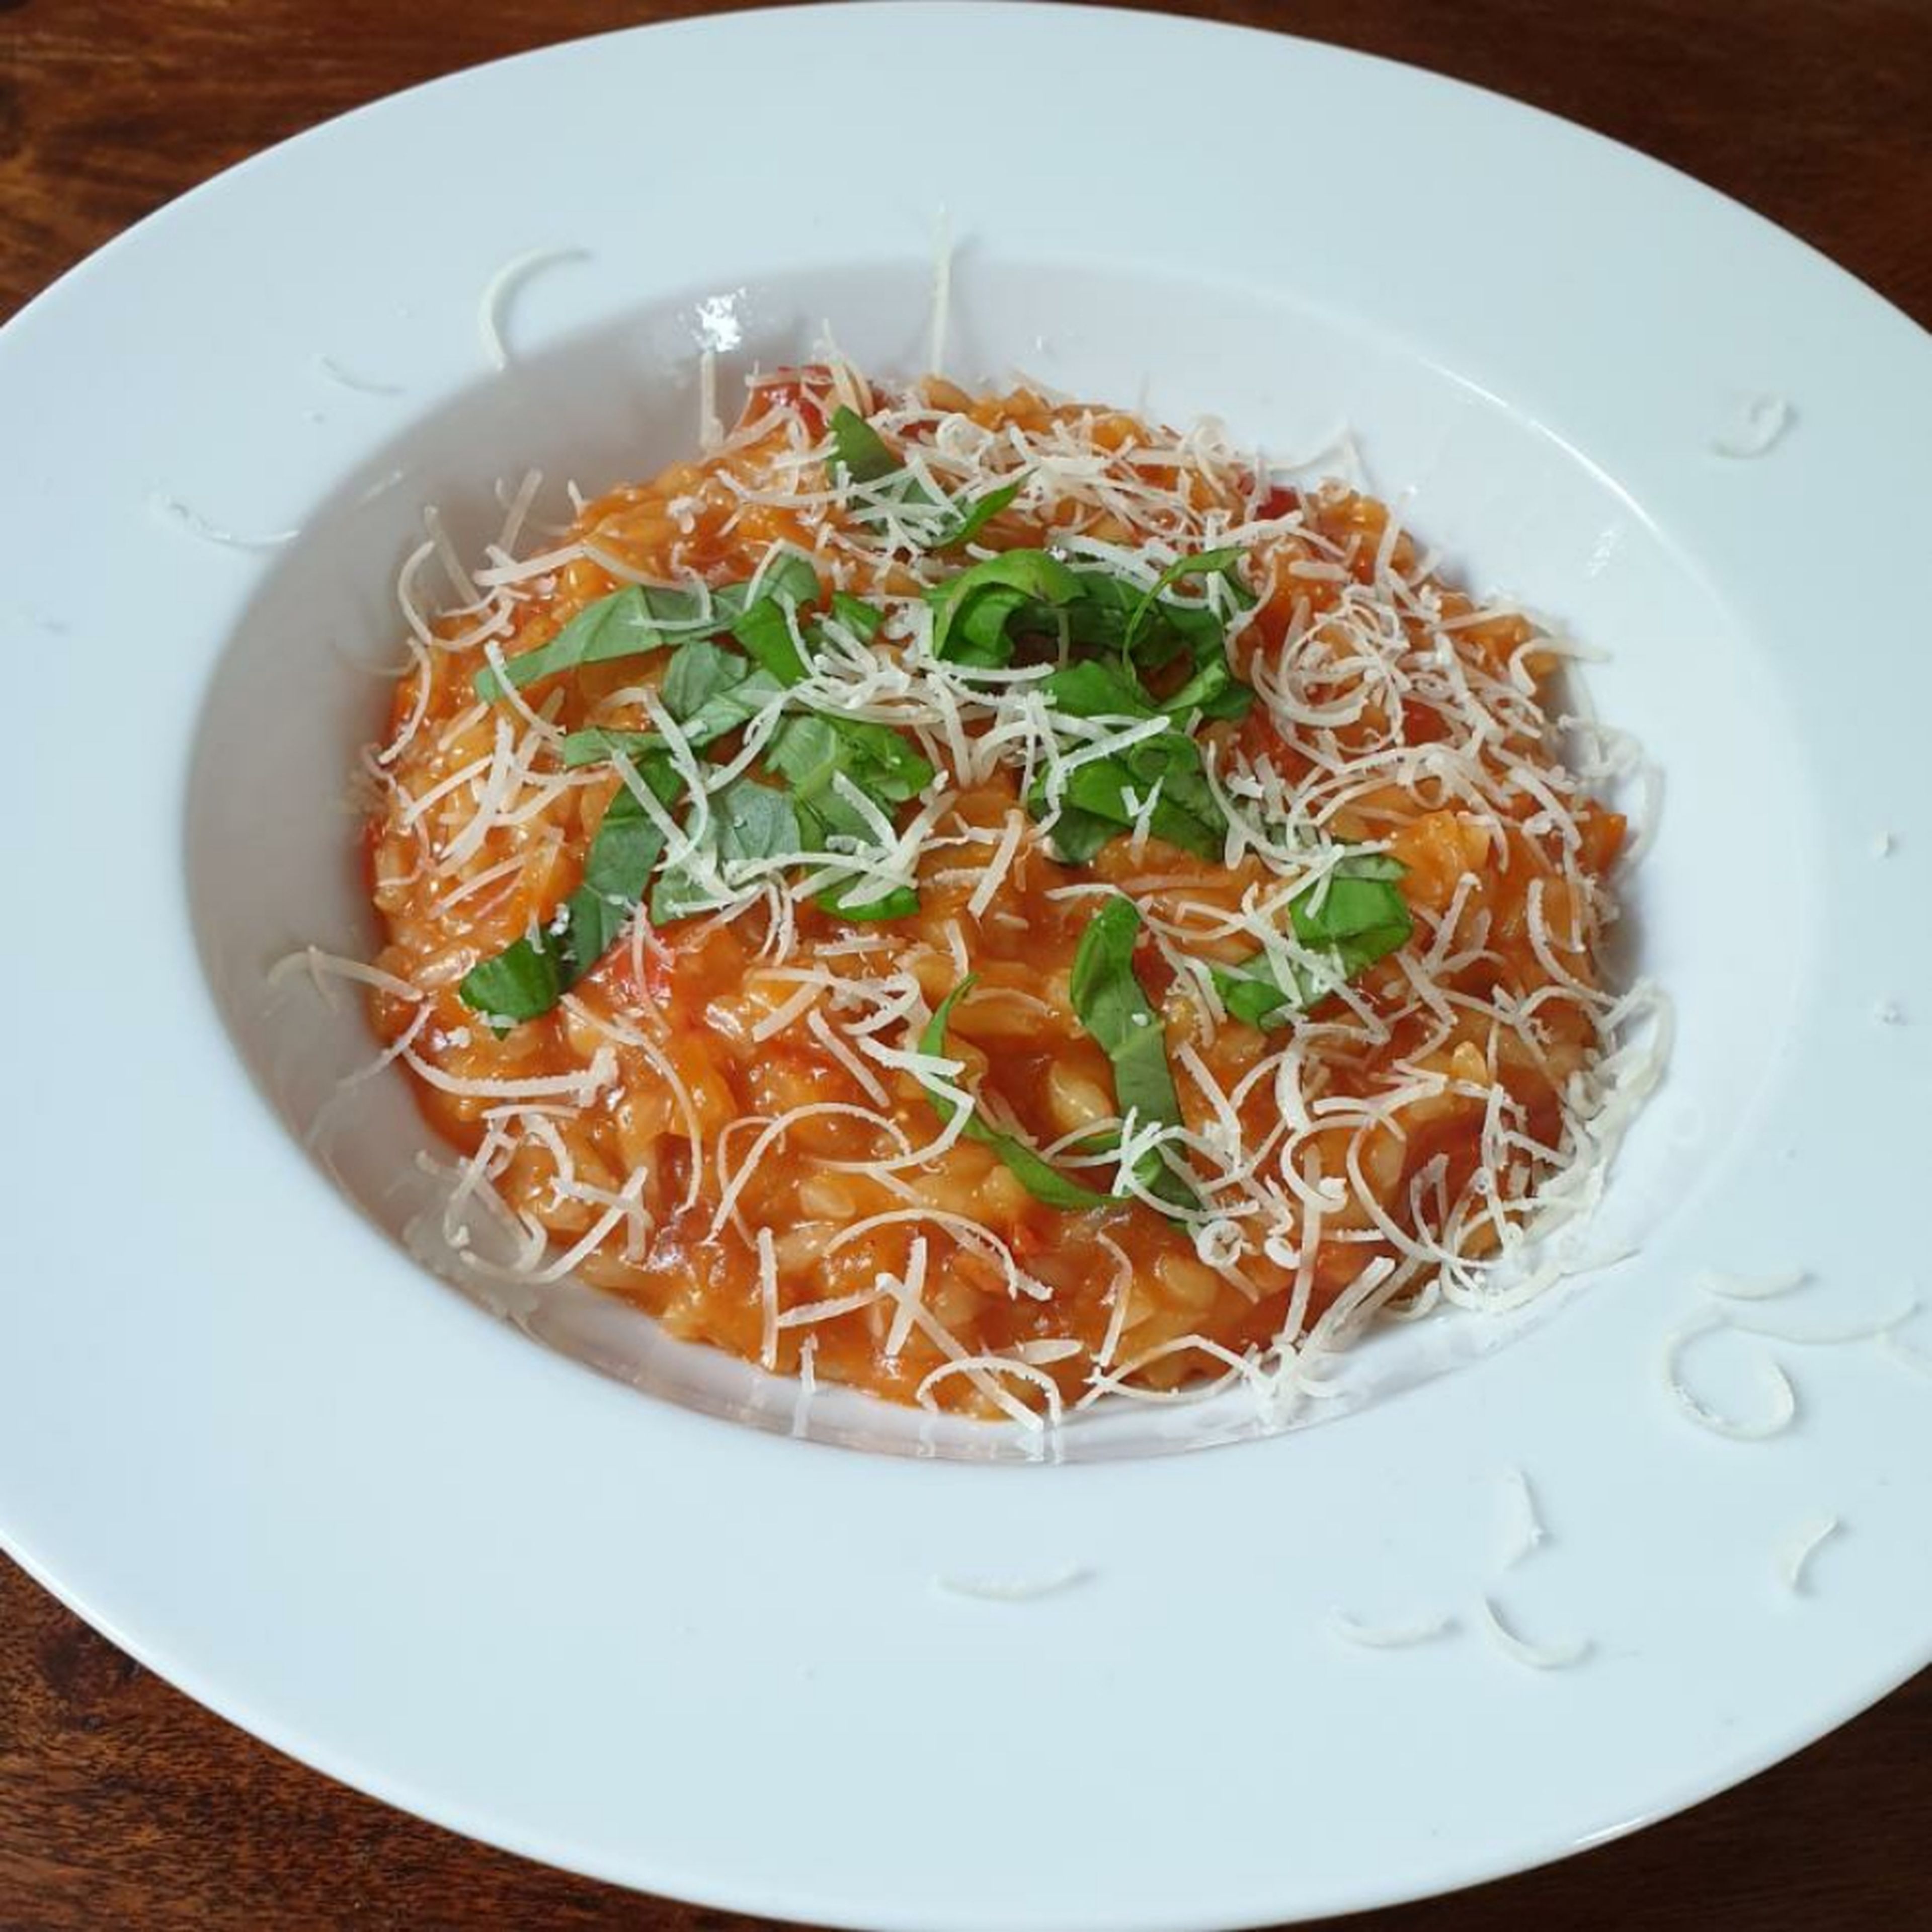 Das Risotto auf den Teller geben und mit dem restlichen Parmesan und dem fein geschnittenen Basilikum garnieren. Guten Appetit!